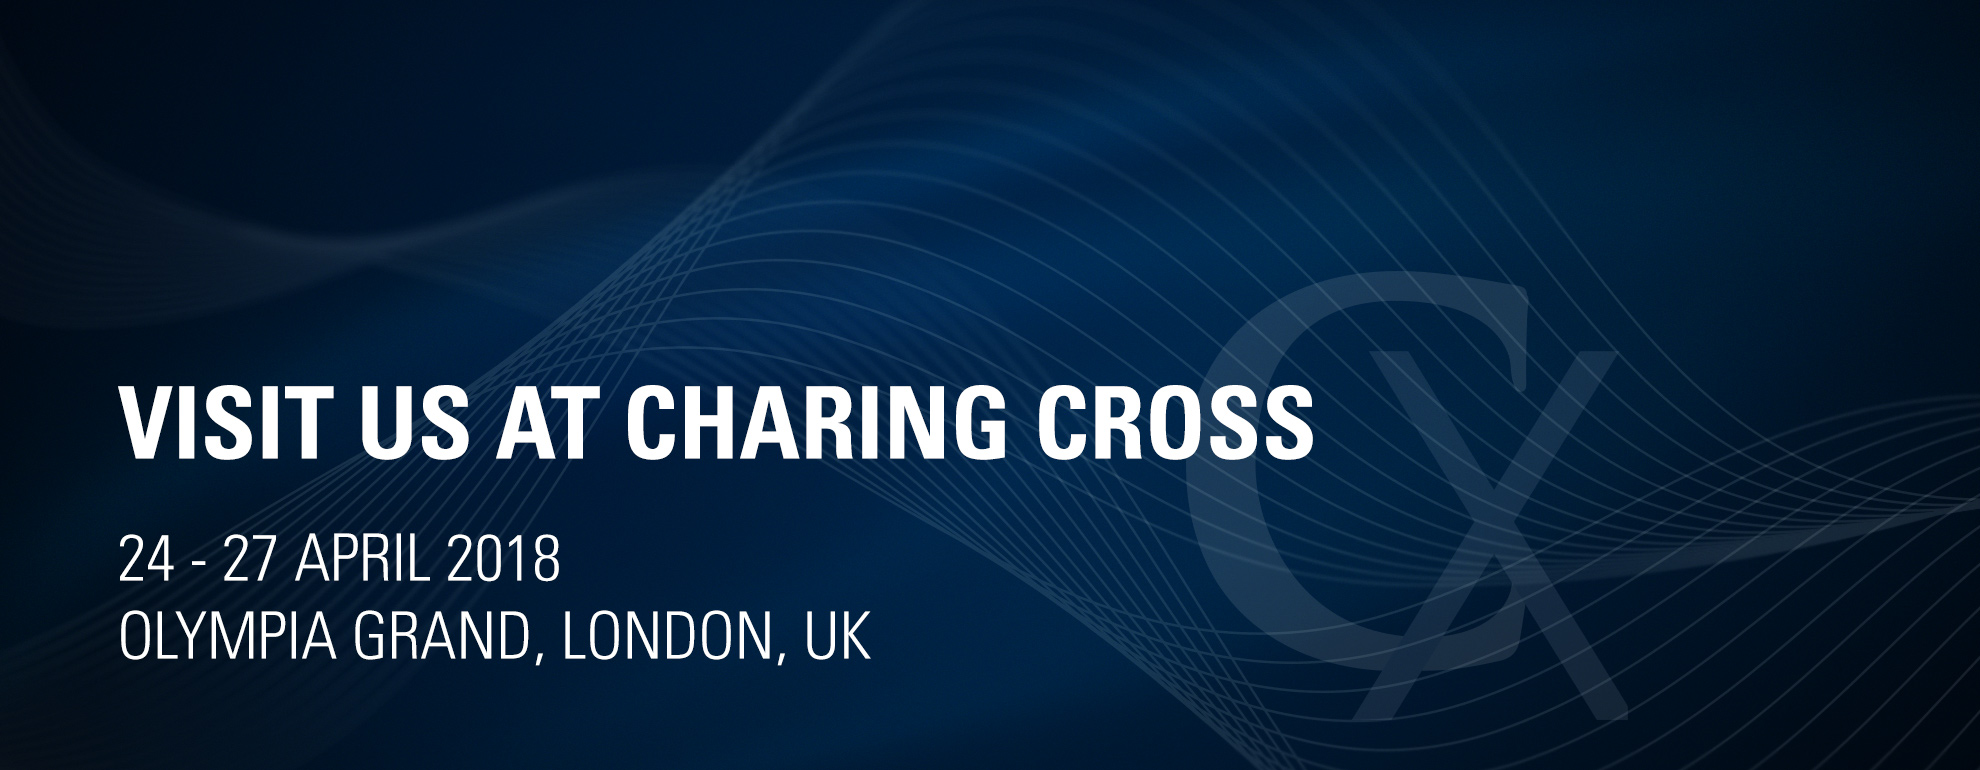 Visit us at Charing Cross 2018